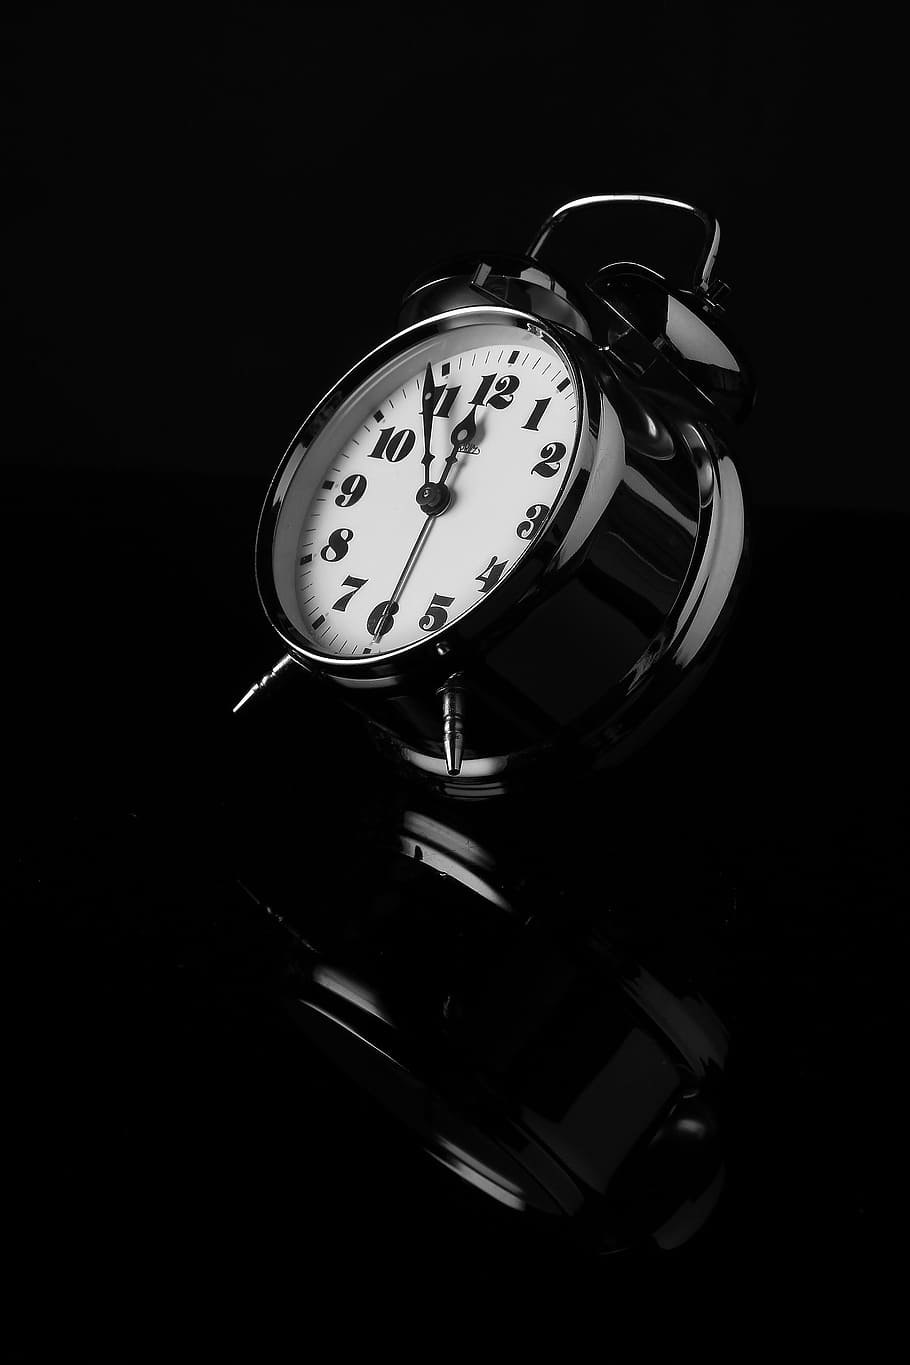 زاویه جالب از ساعت زنگدار رومیزی با زمینه سیاه خاص